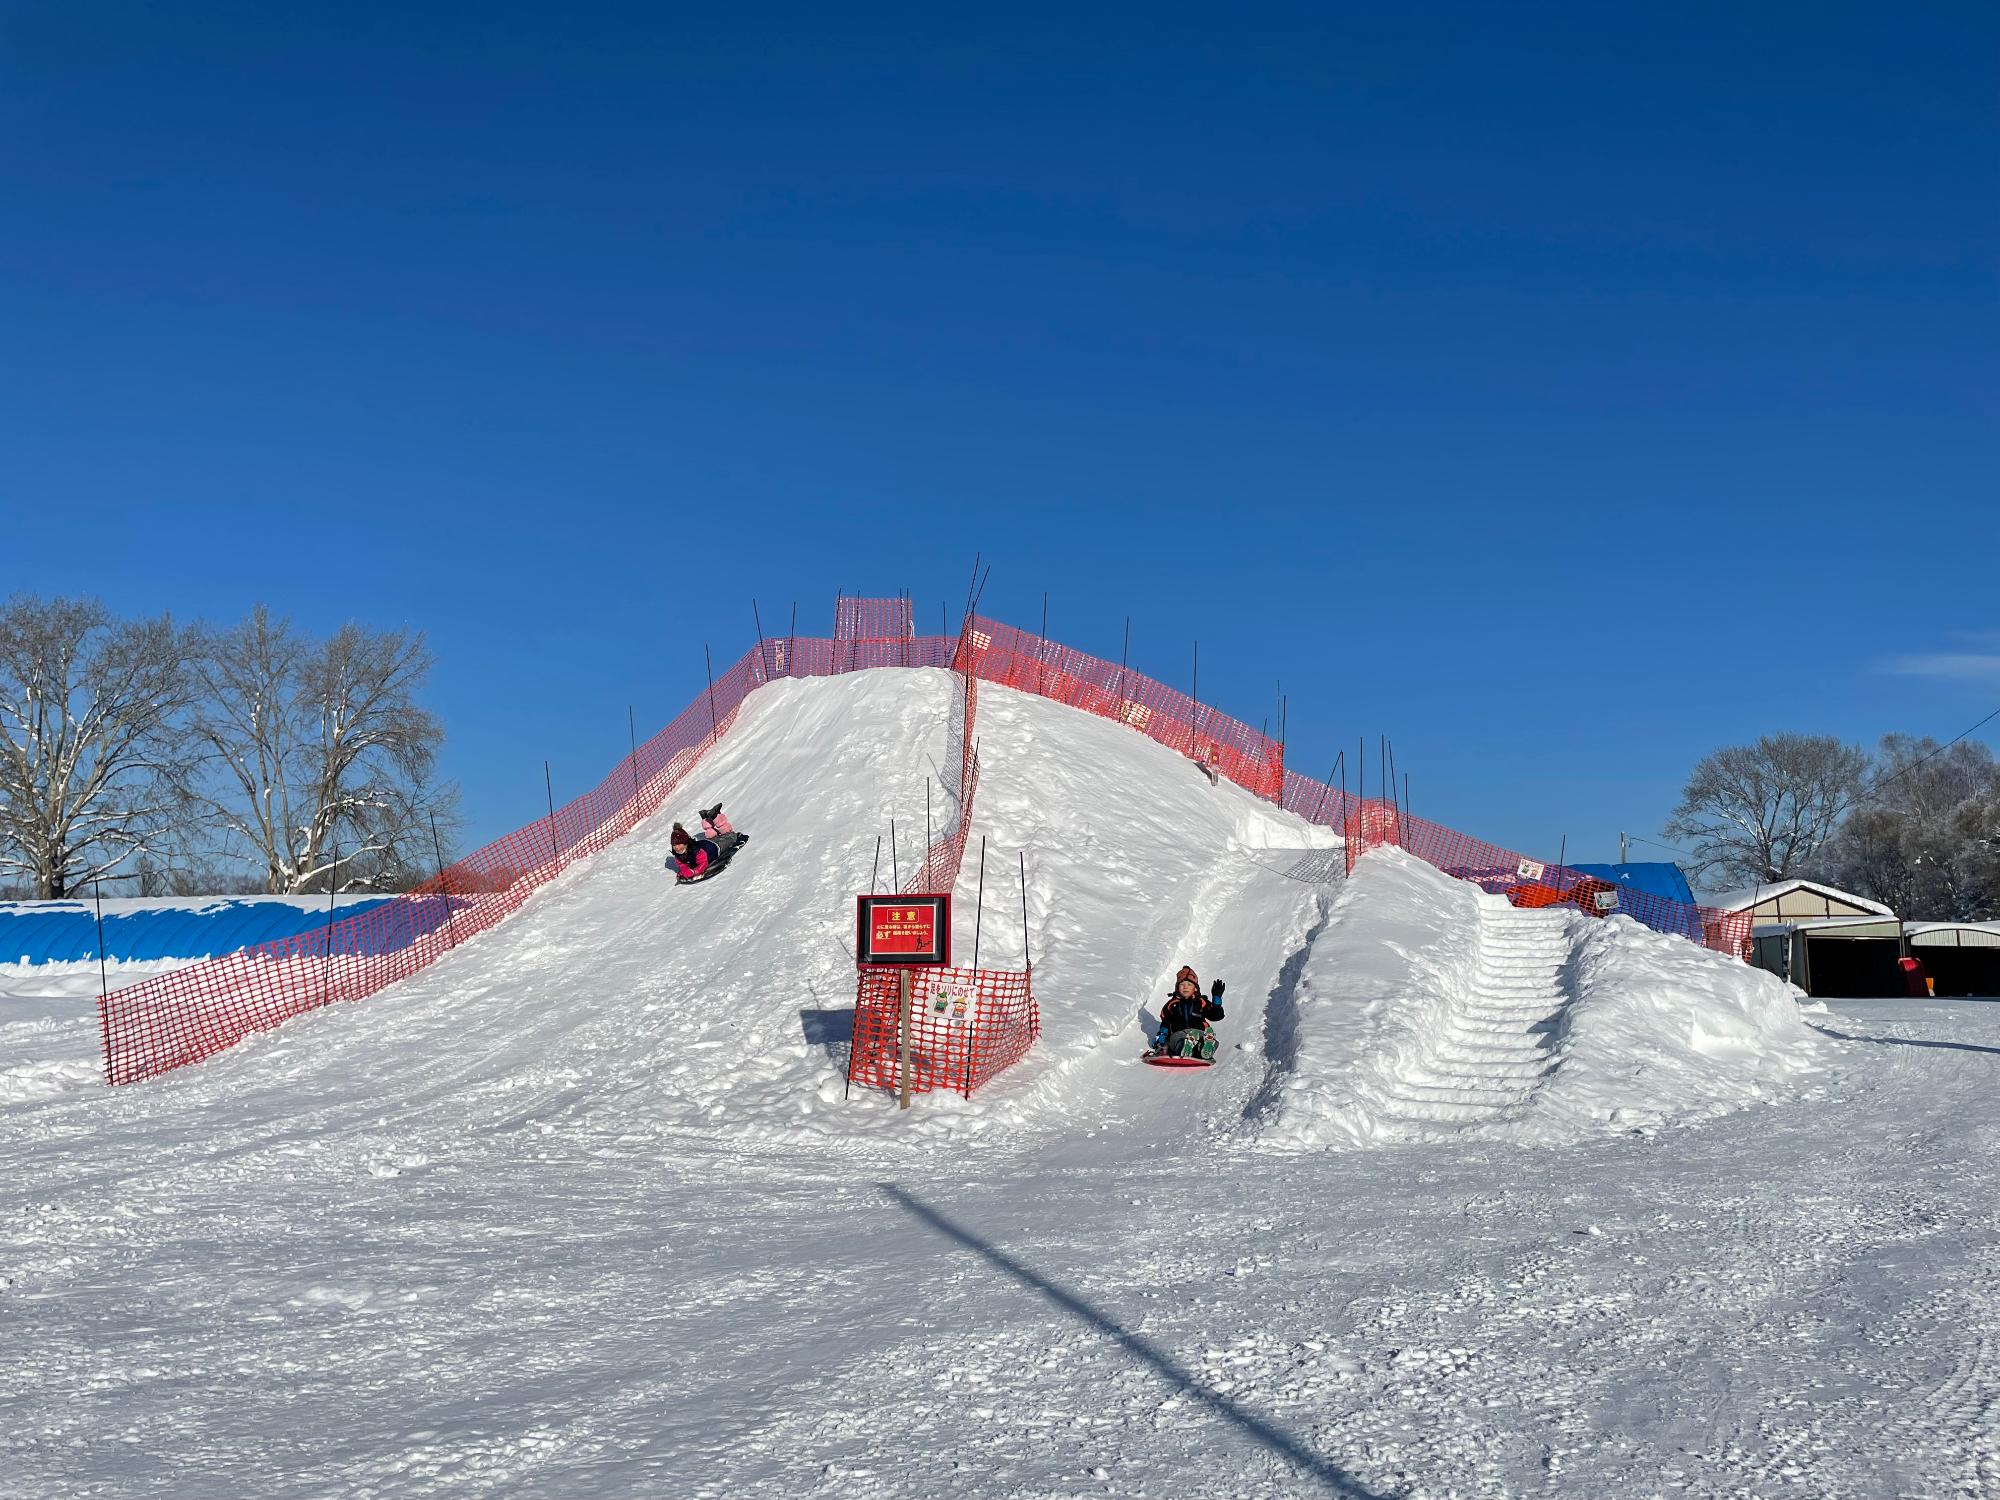 青空の下、雪を高く積み上げた滑り台でそり滑りを楽しんでいる人たちの写真